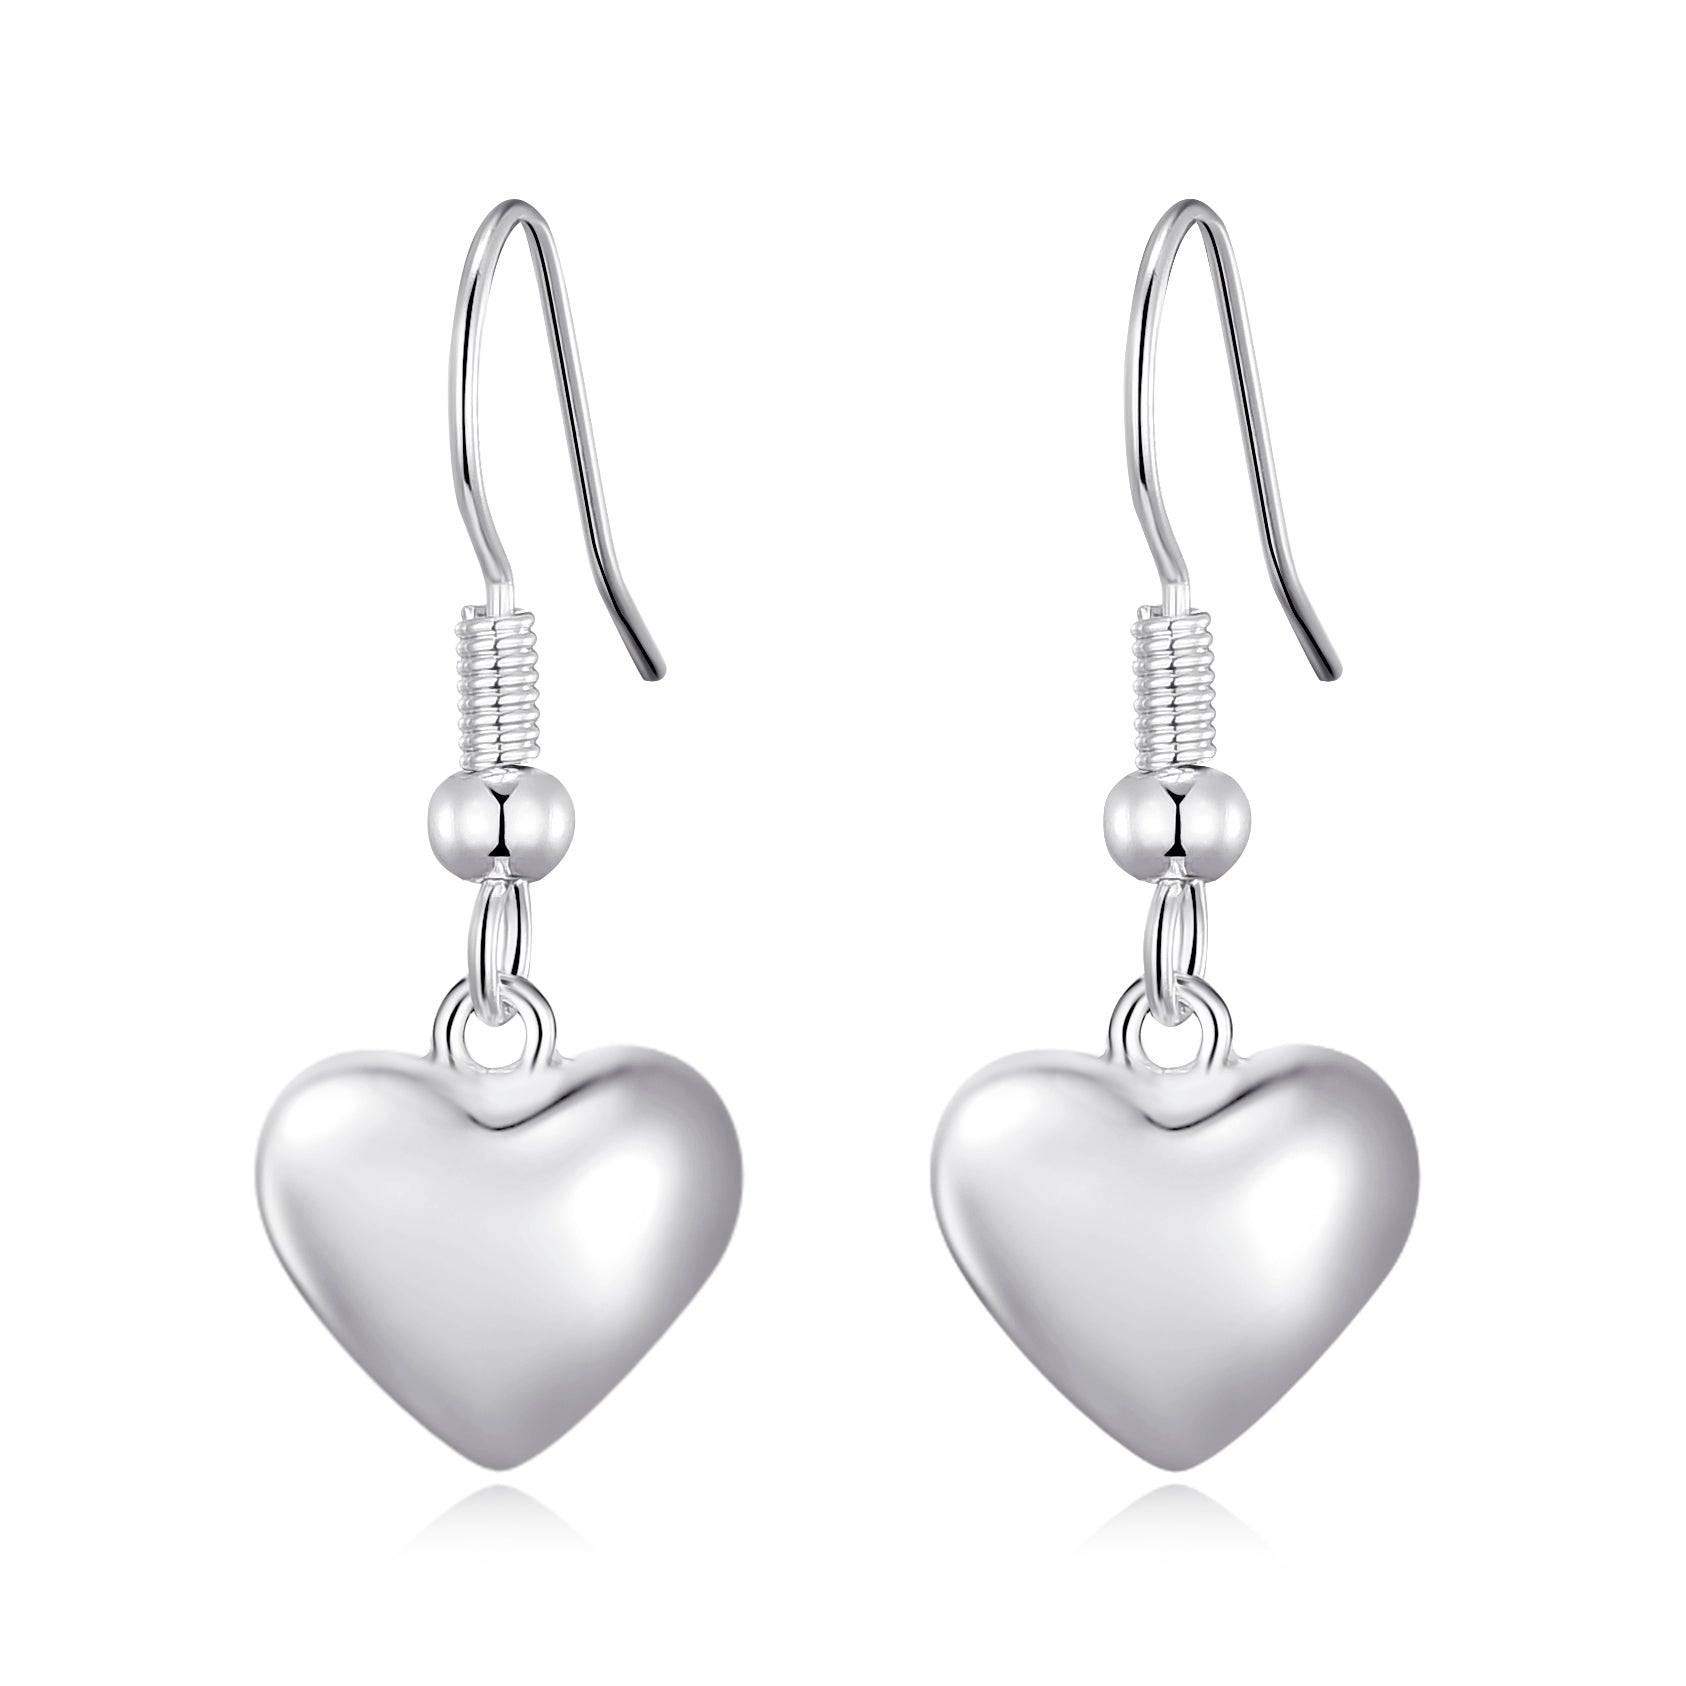 Sterling Silver Puffed Heart Drop Earrings by Philip Jones Jewellery